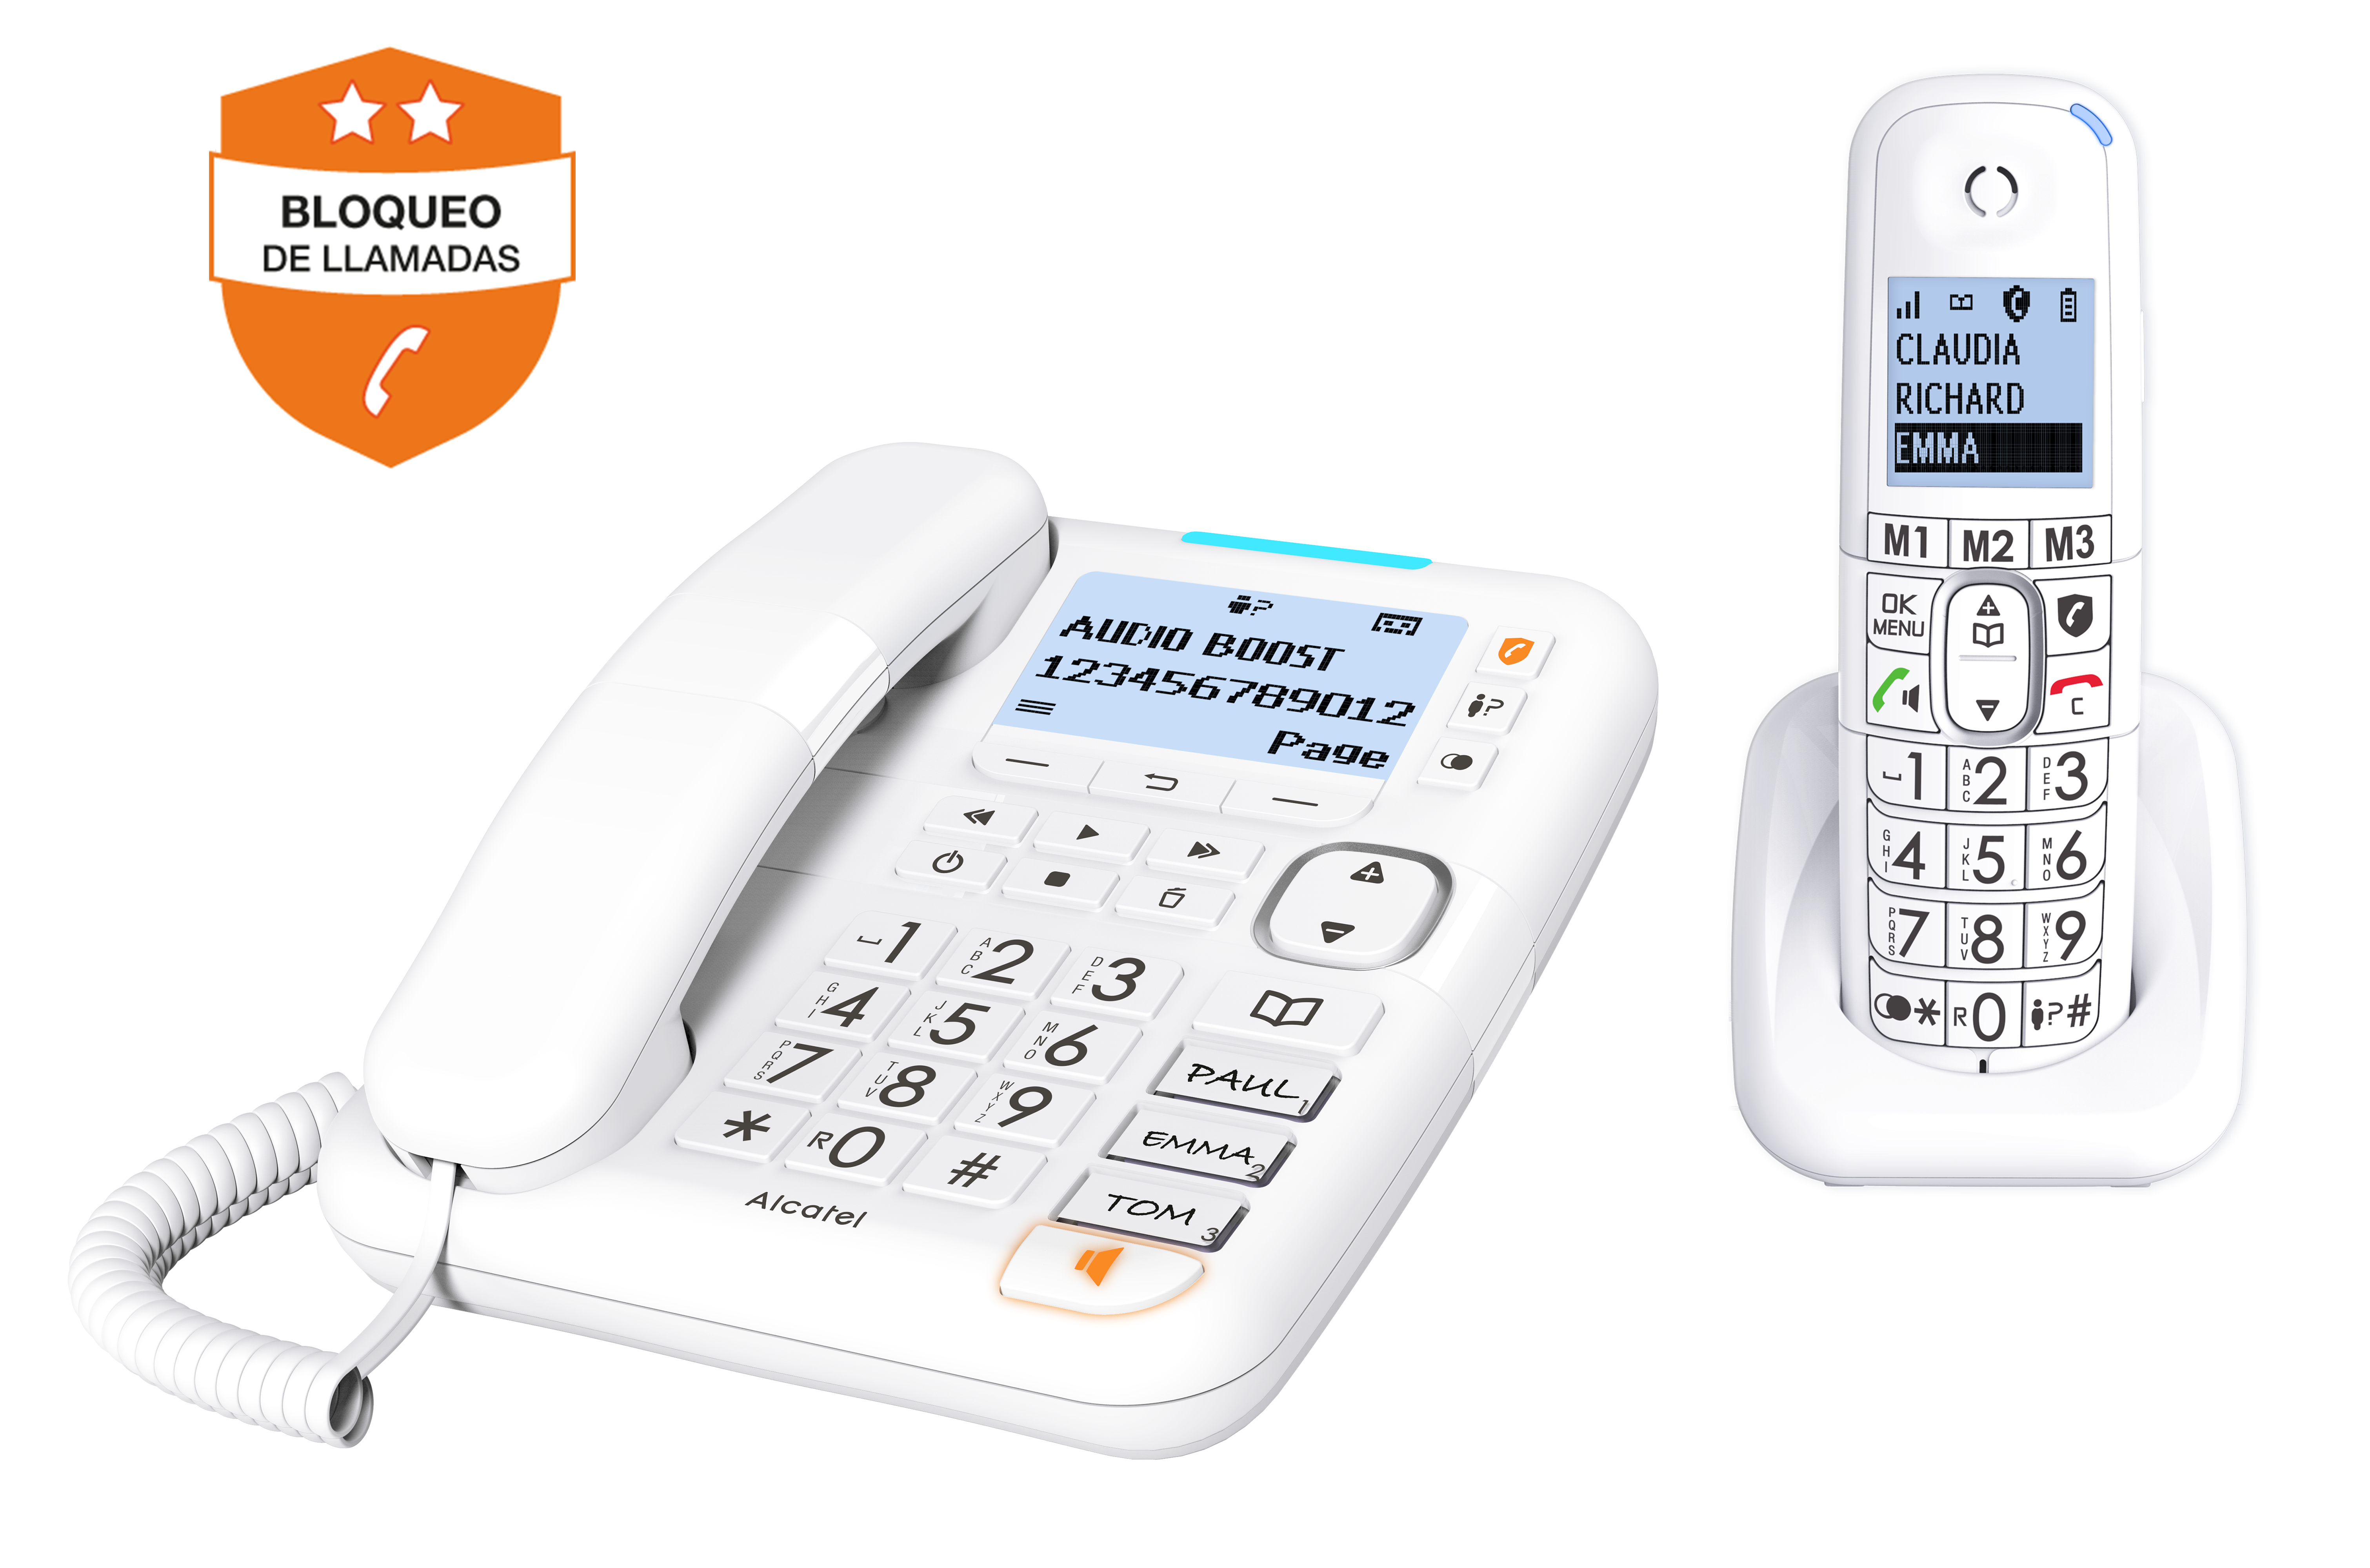 Alcatel ATL1423266 - Teléfono inalámbrico DECT, XL785 blanco con bloqueo de  llamadas, dúo